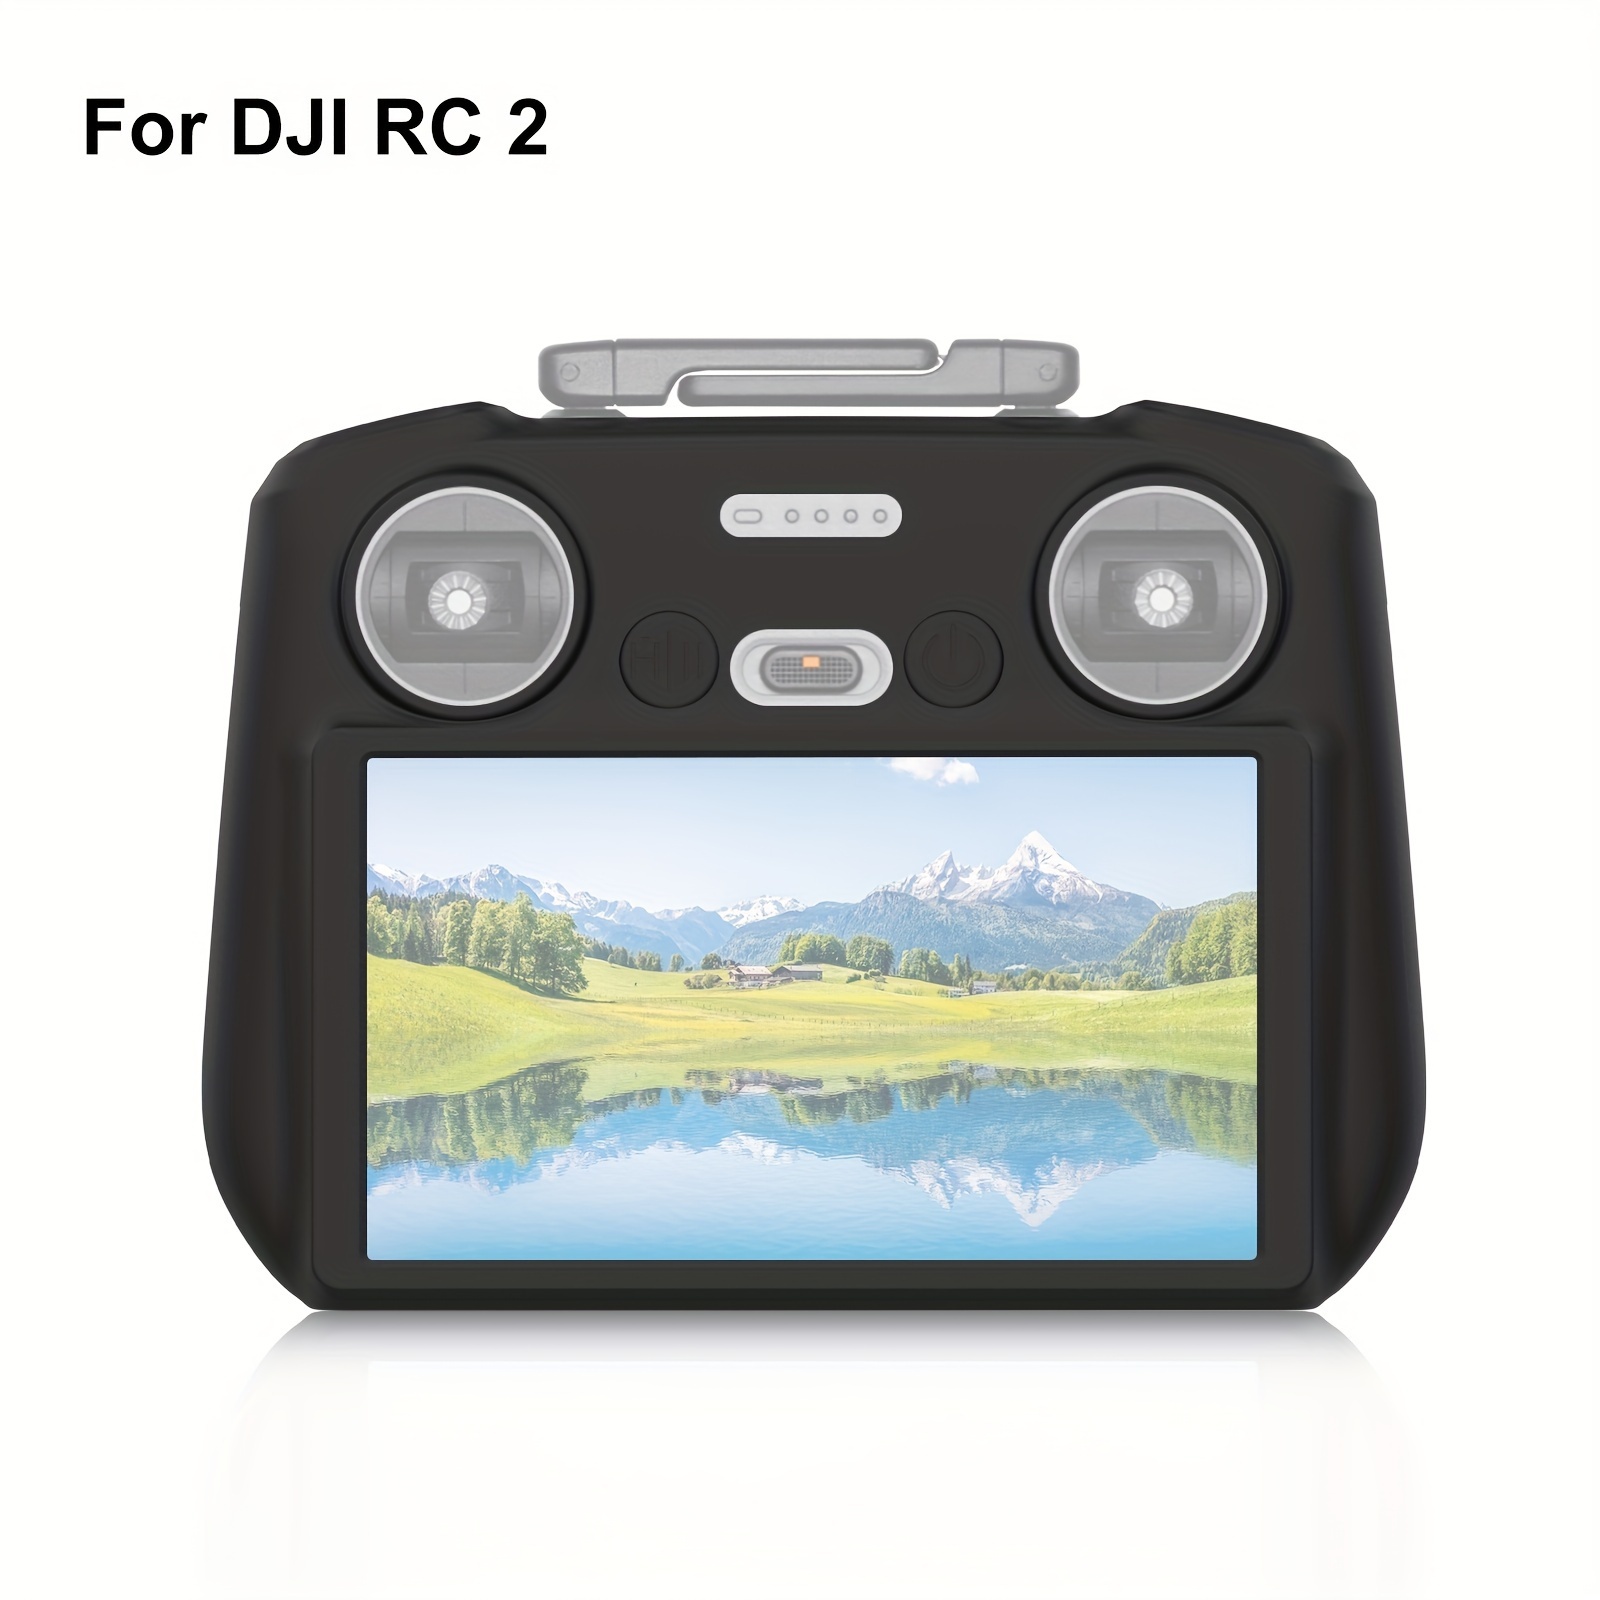 DJI Mini 4 Pro with DJI RC 2